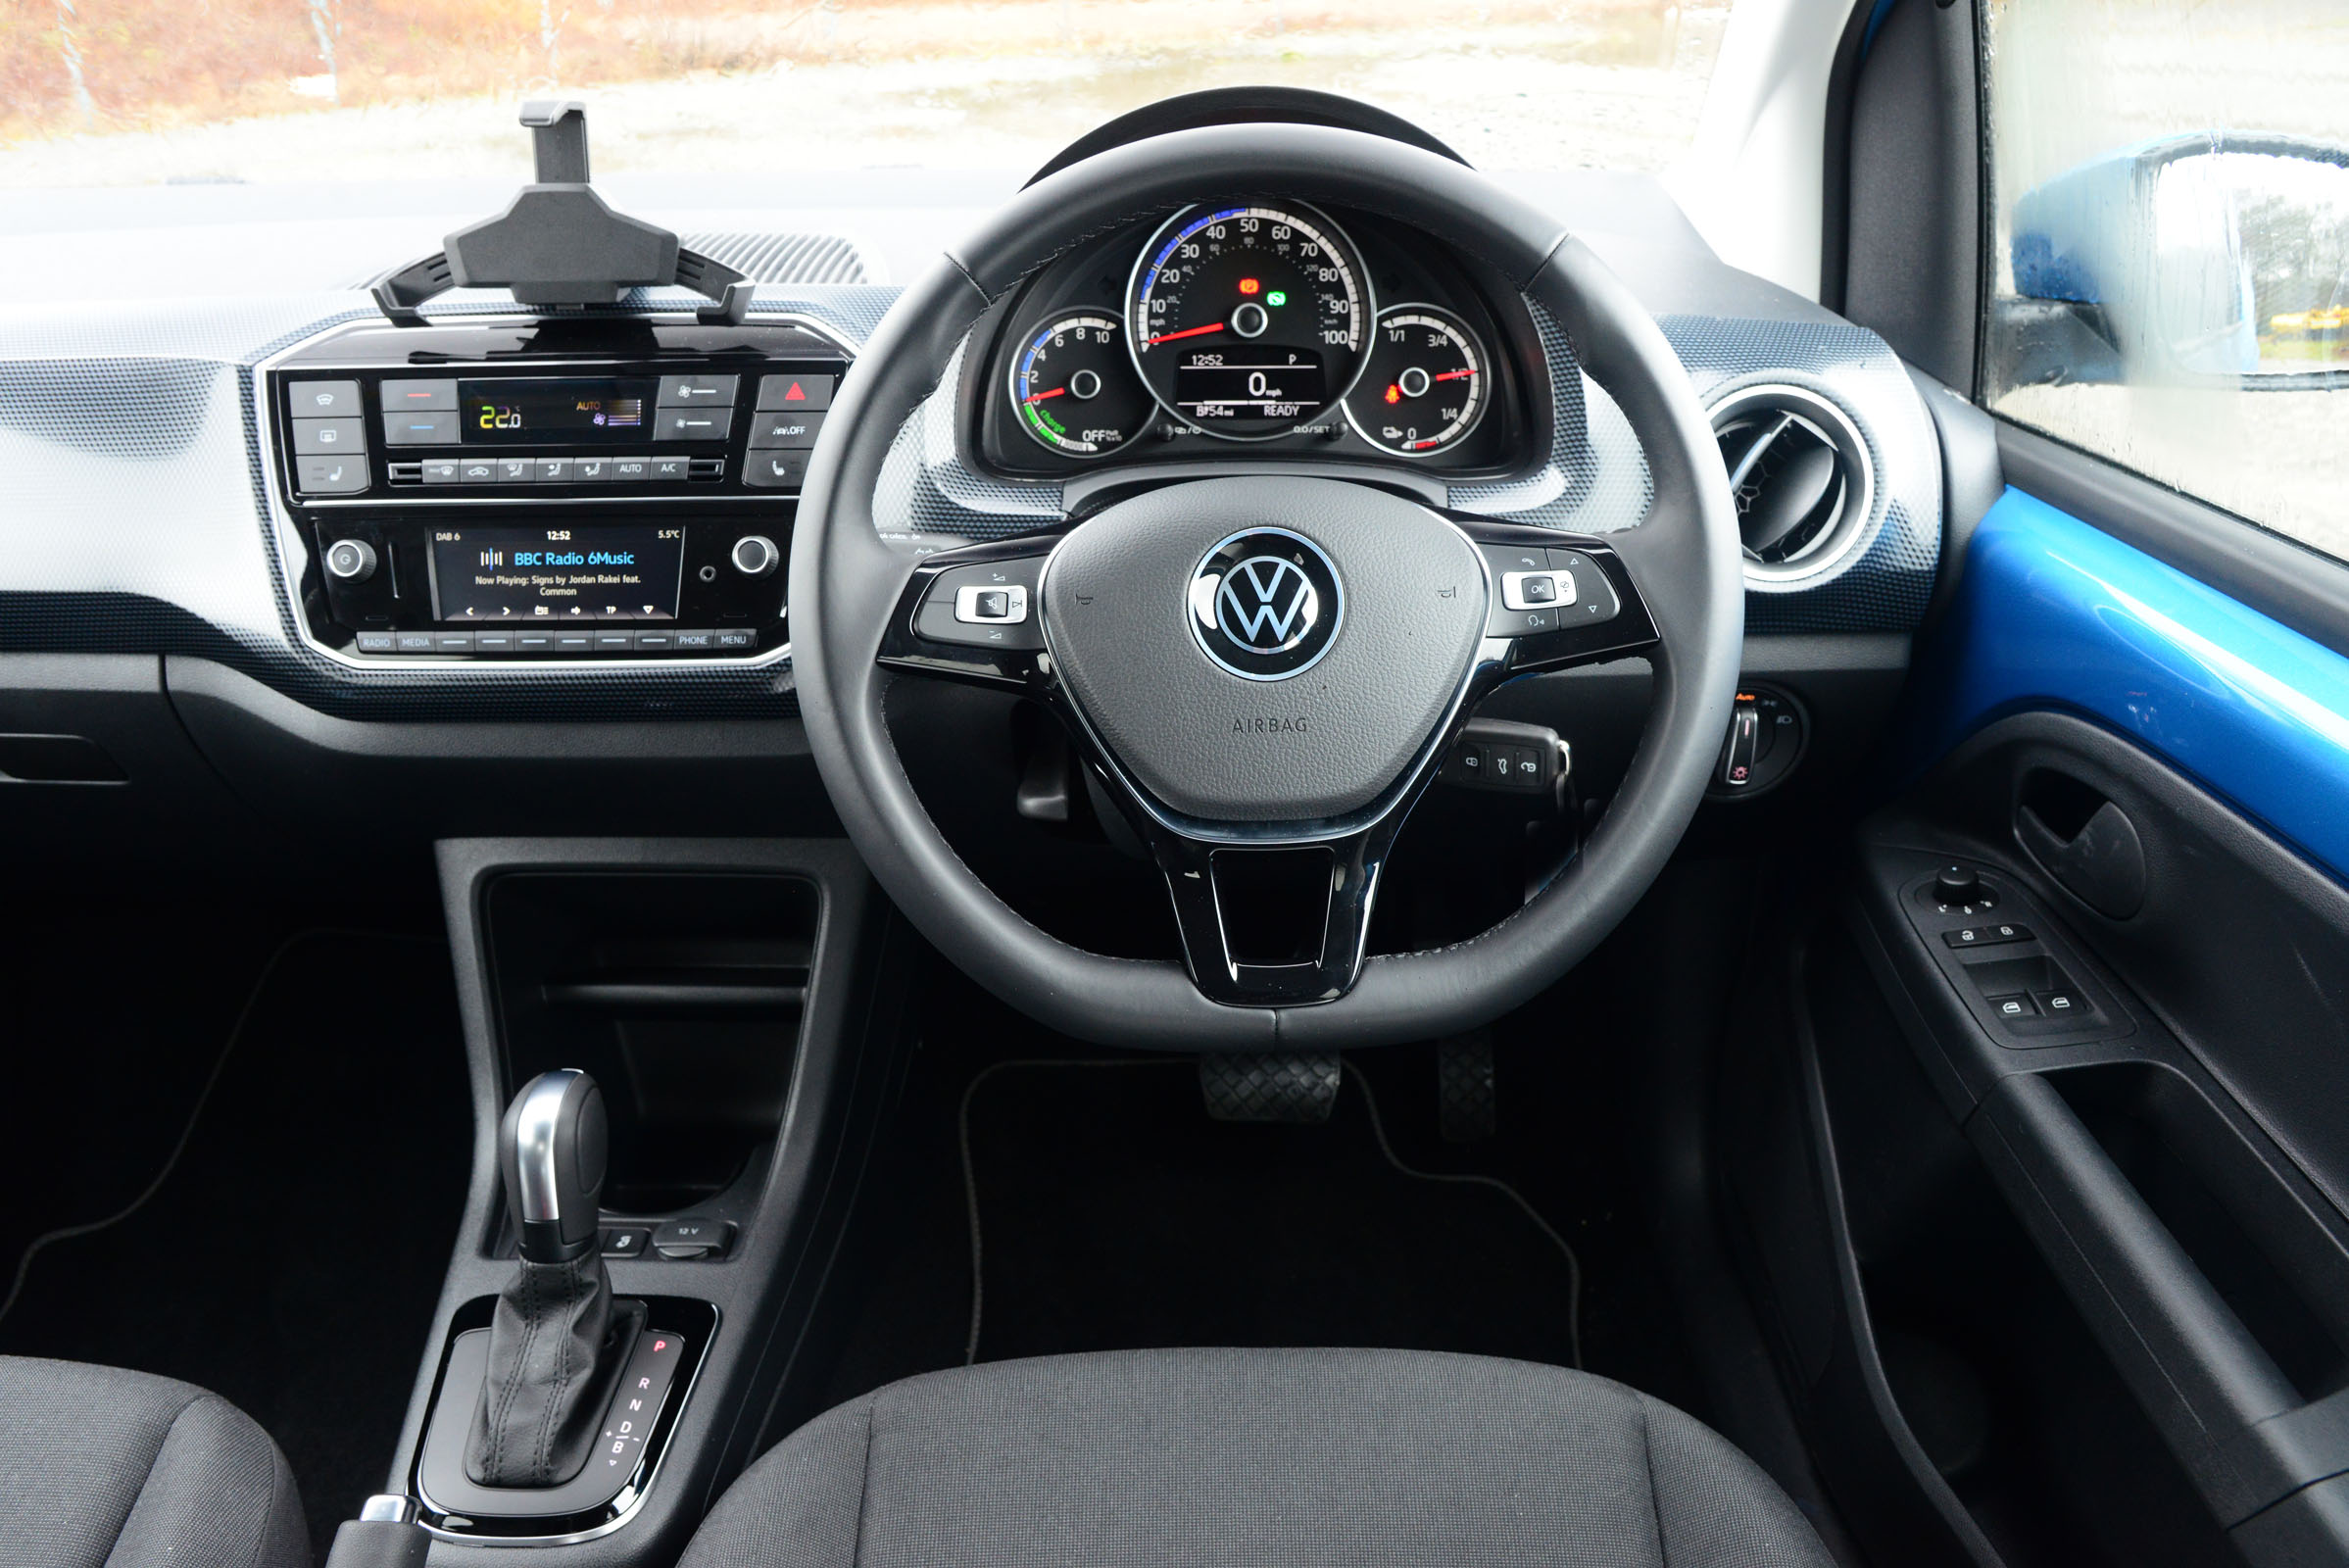 Skoda Citigo-e iV vs Volkswagen e-up!: interior and infotainment